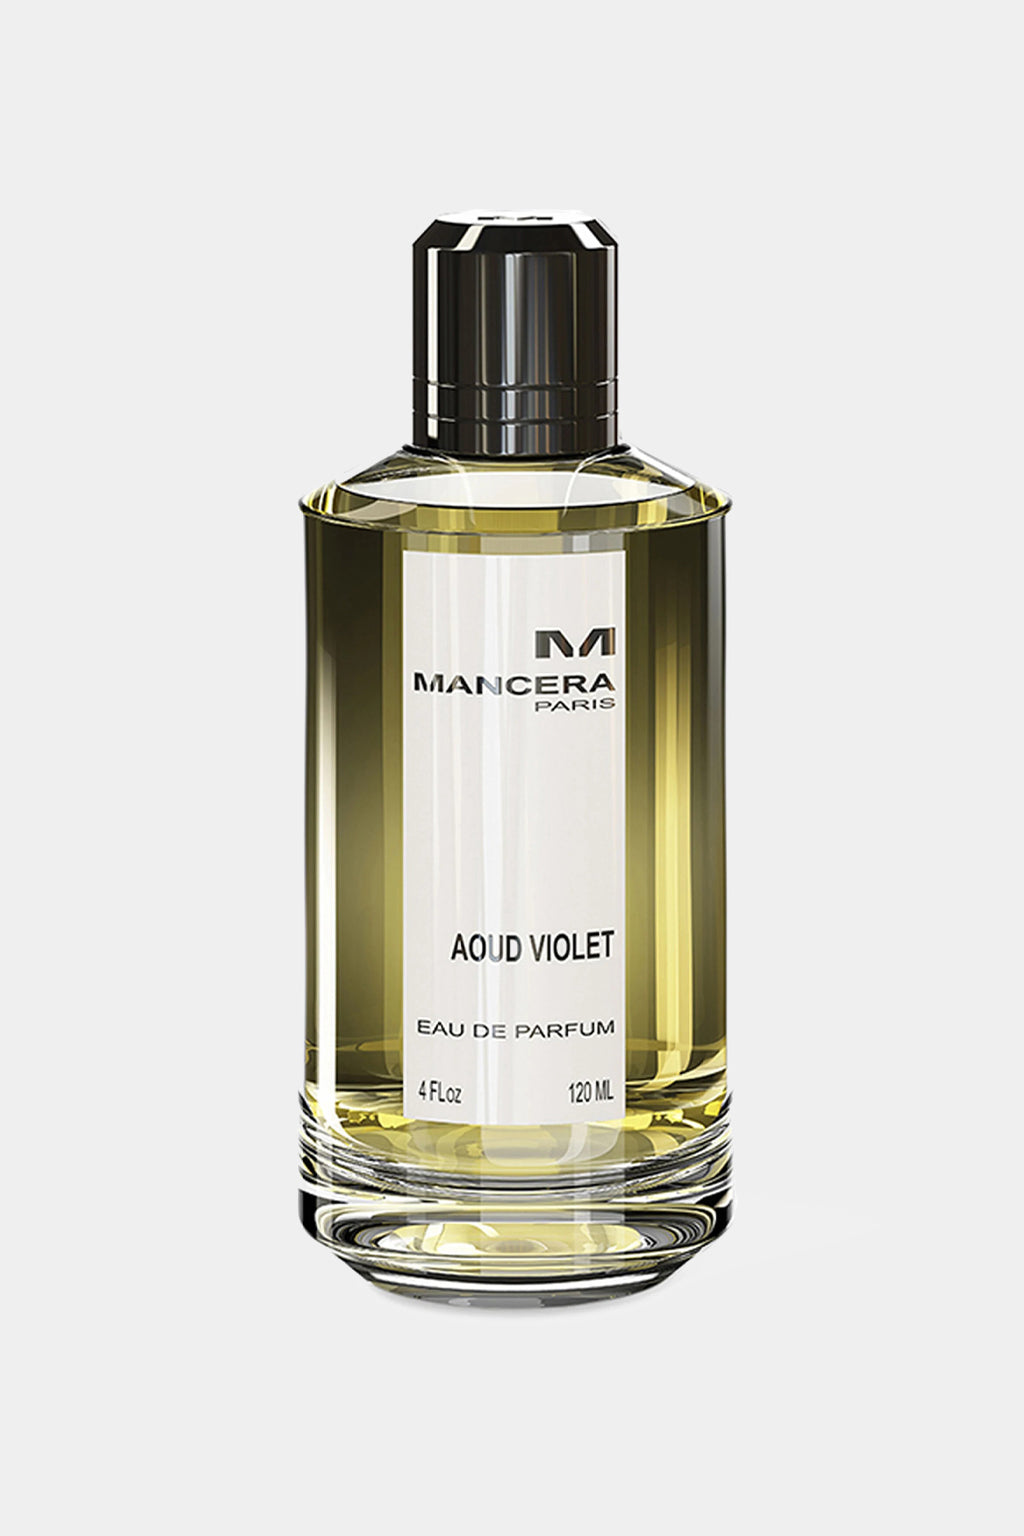 Mancera - Aoud Violet Eau de Parfum